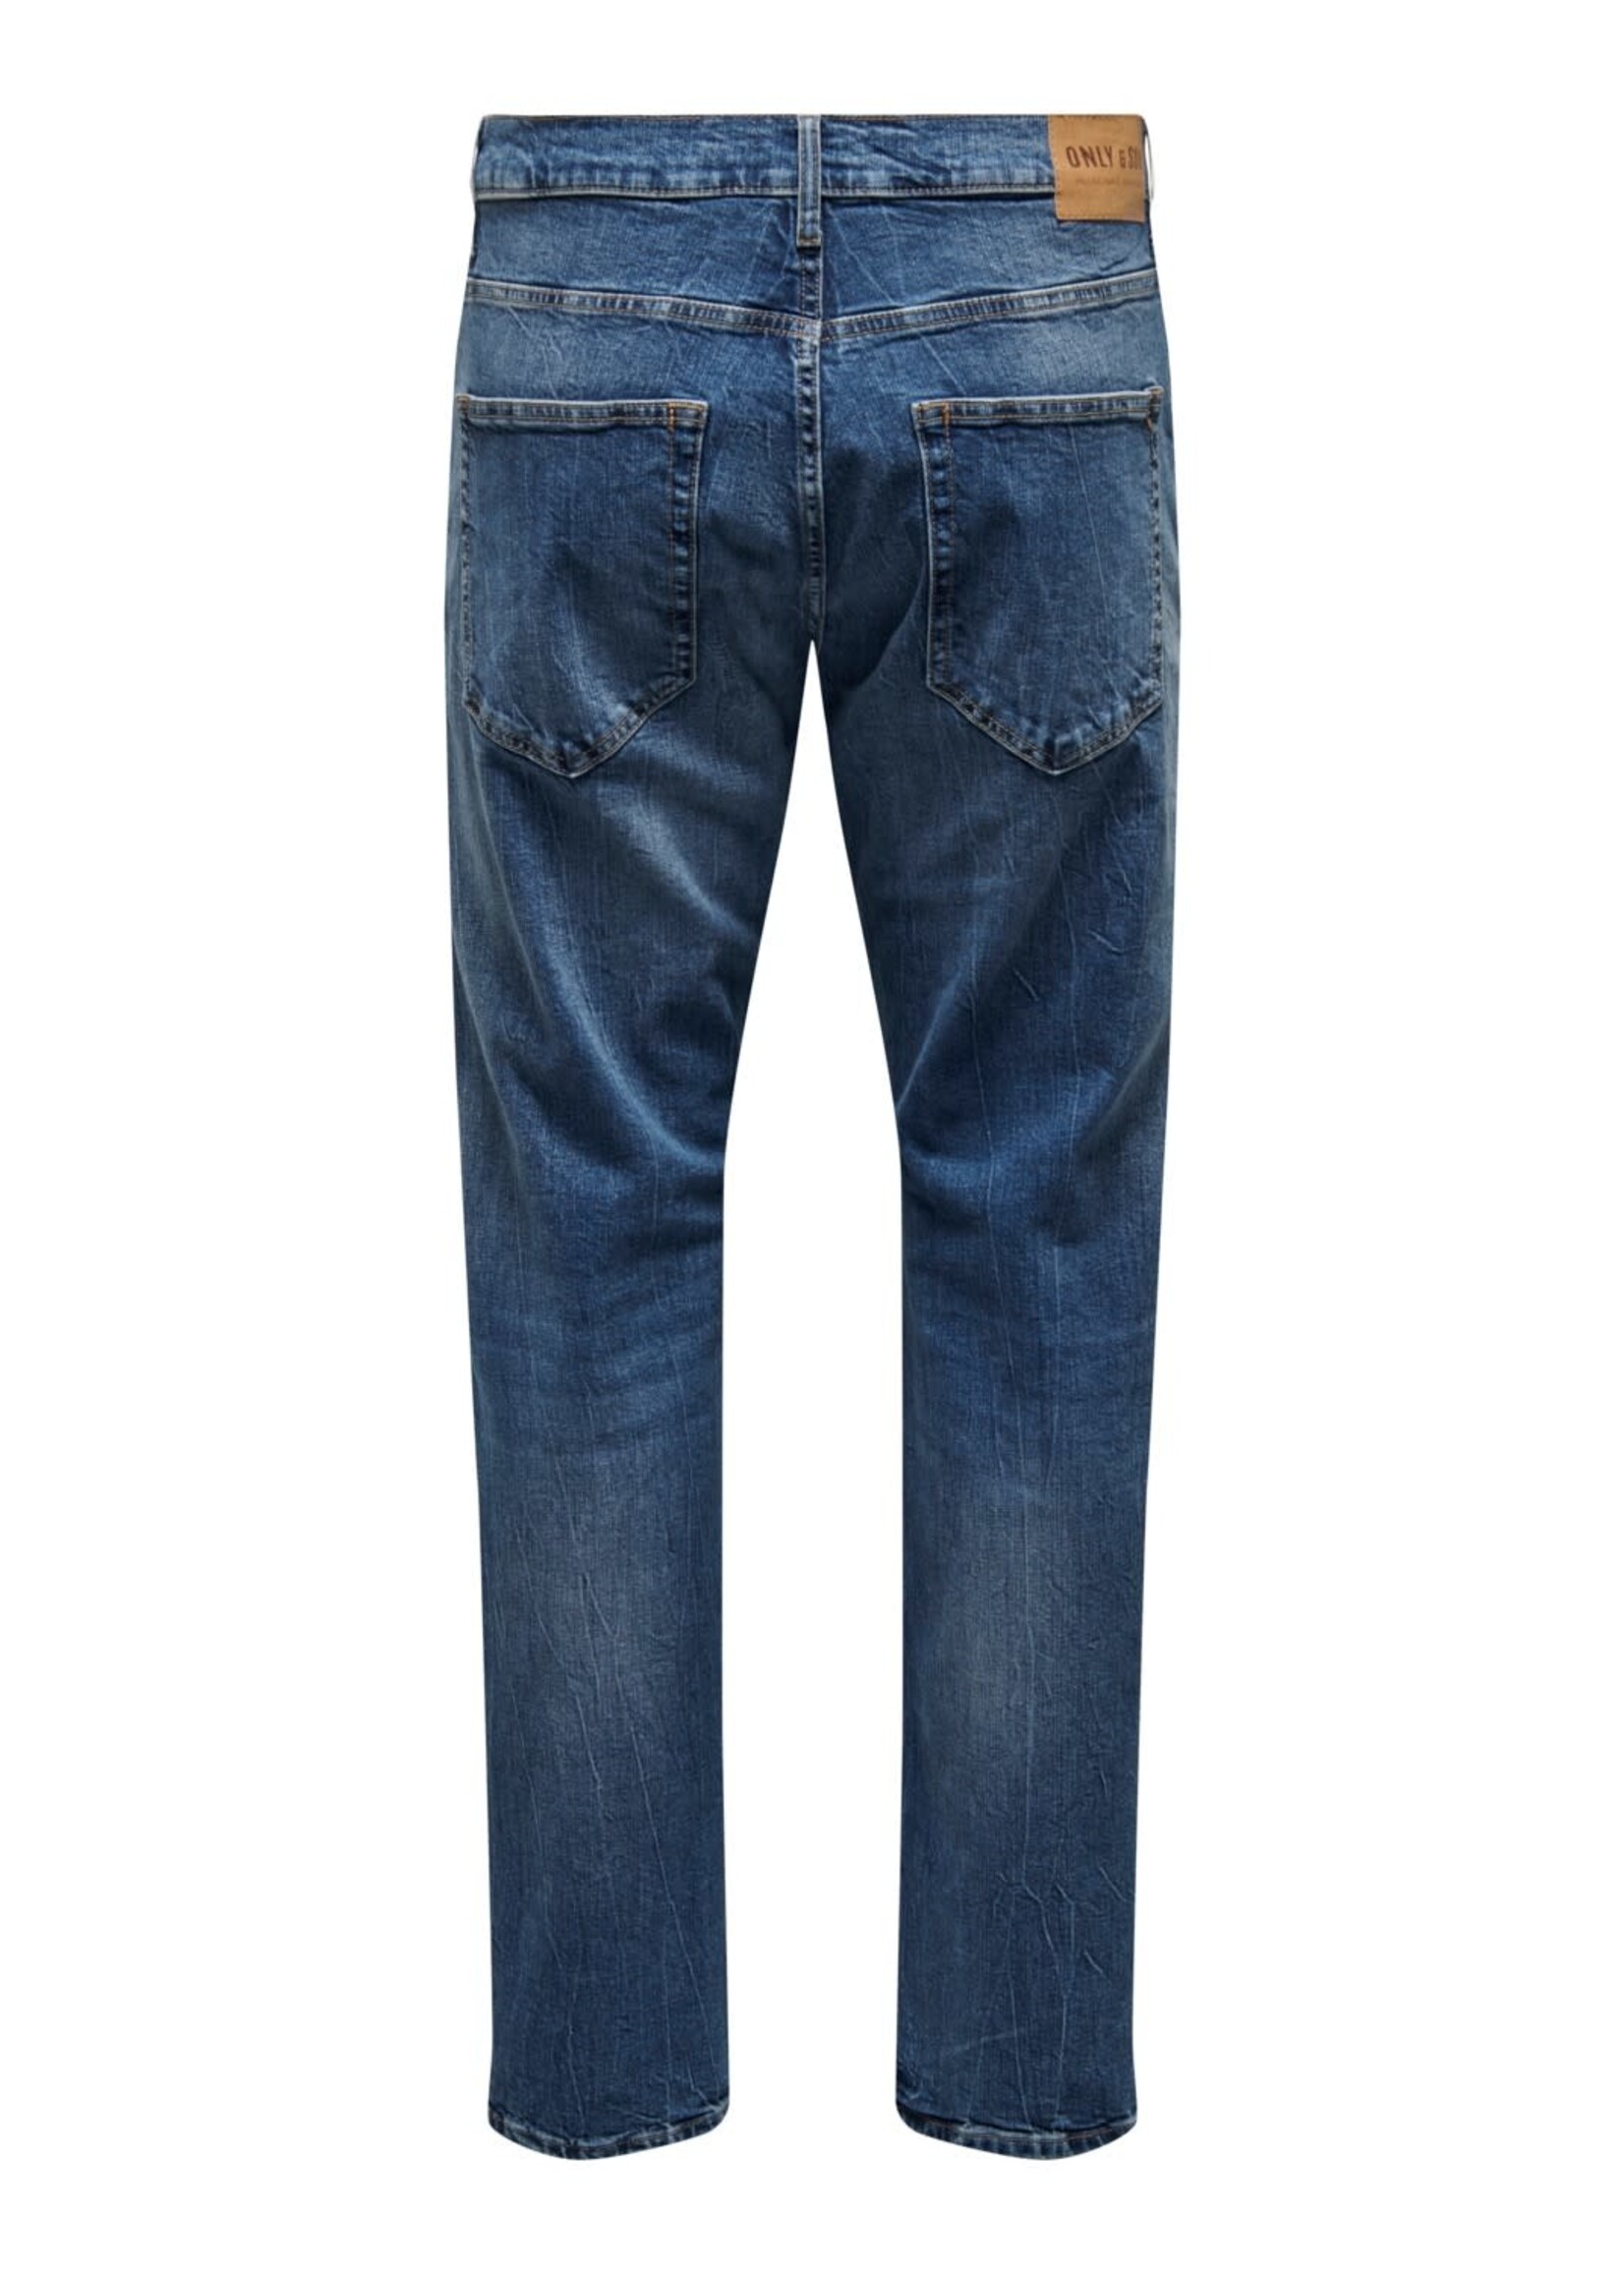 Only & Sons Avi Comfort Denim  4935 Jeans Dark Blue